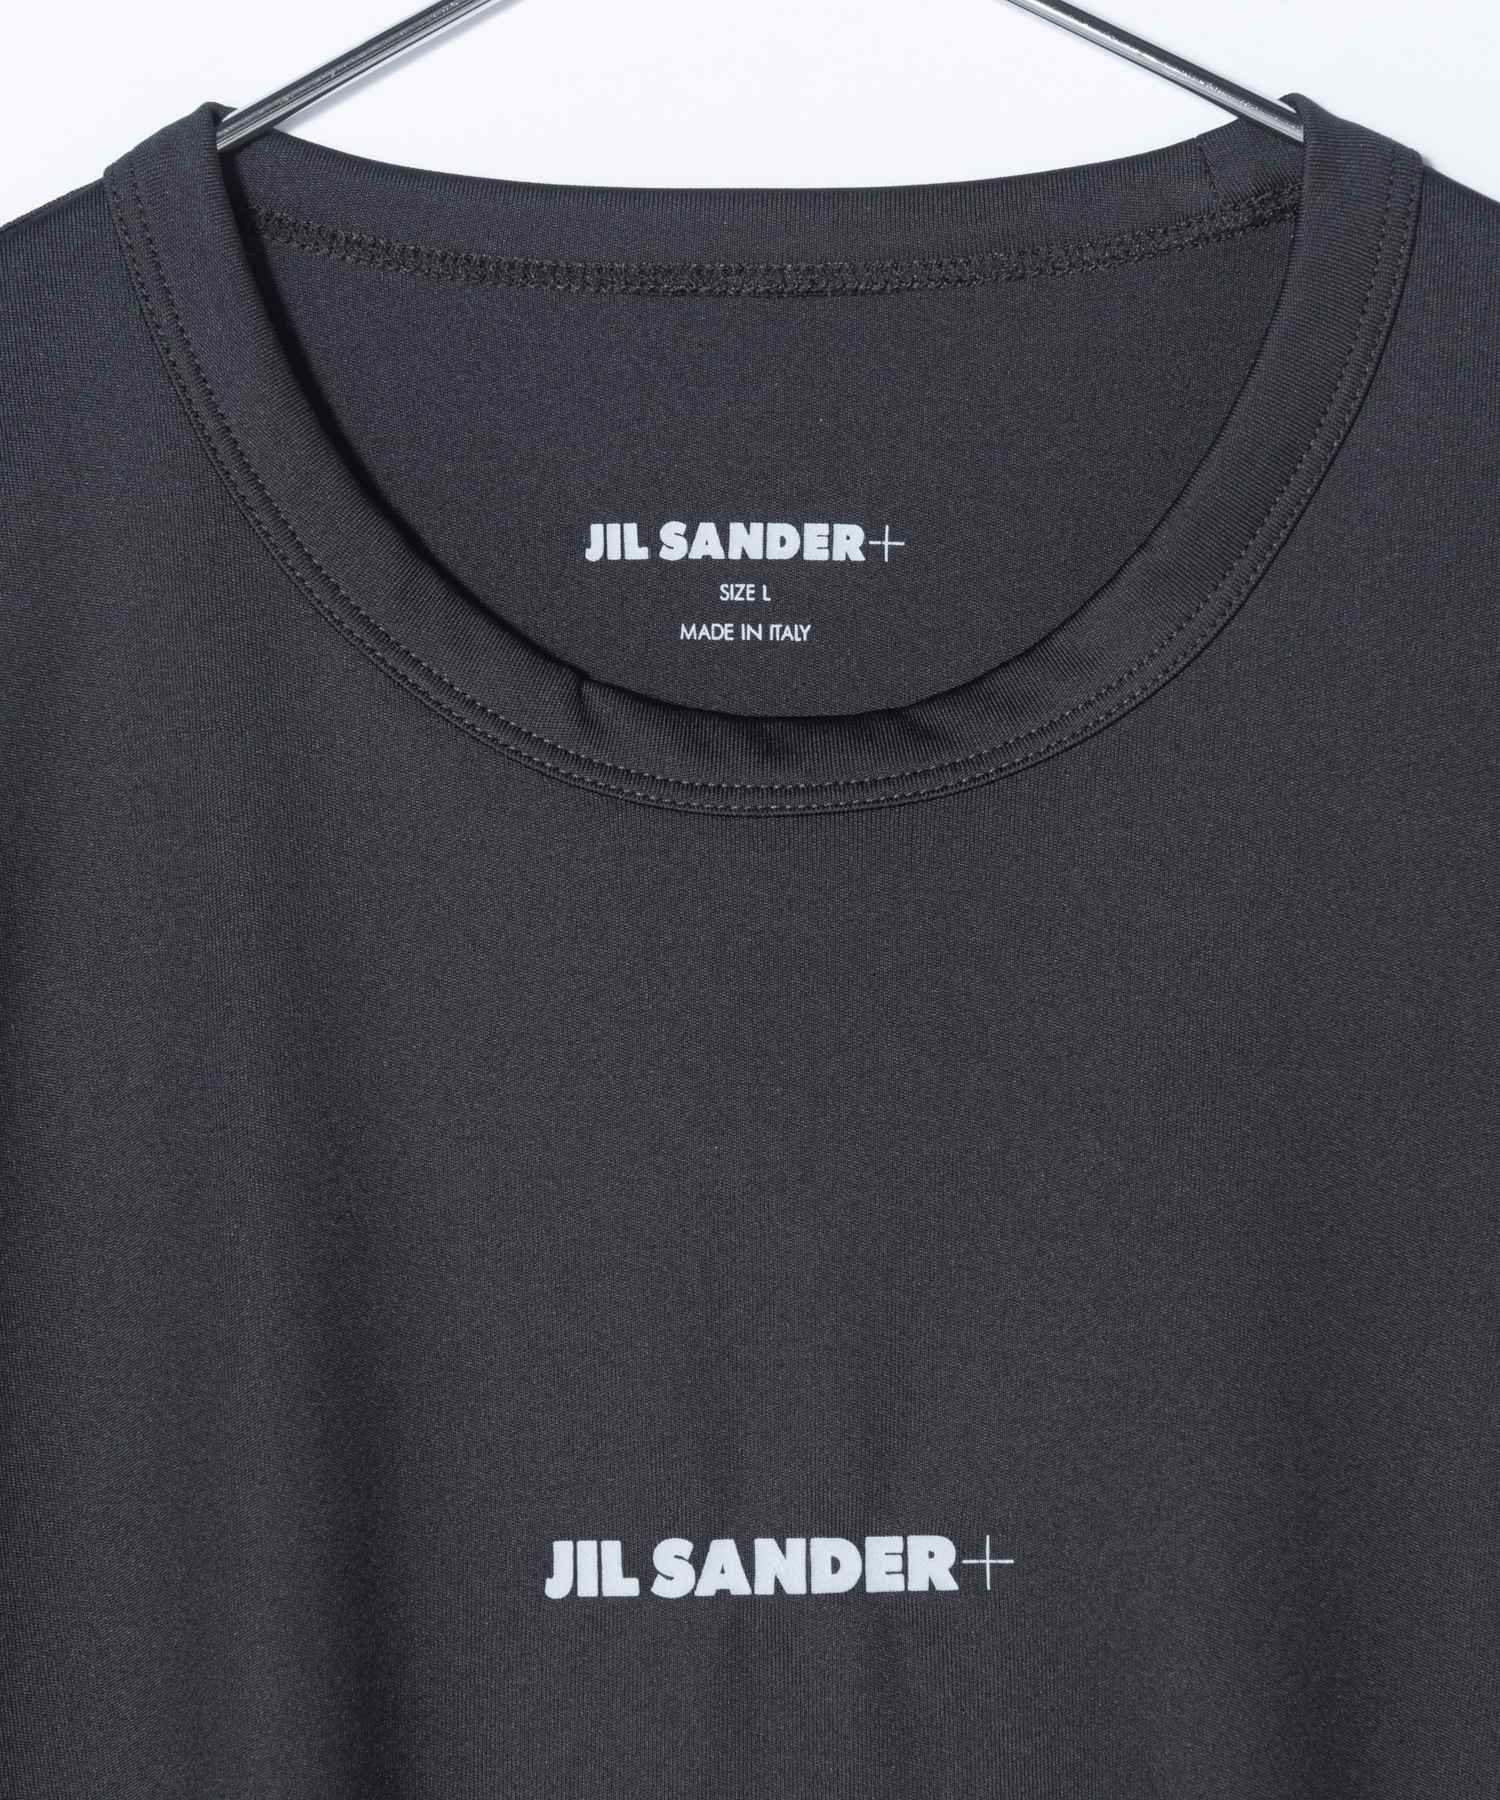 ジルサンダー プラス JIL SANDER+ J47GC0022 J70031 Tシャツ メンズ トップス 長袖 ロングスリーブ クルーネック ロンT ロゴ カ